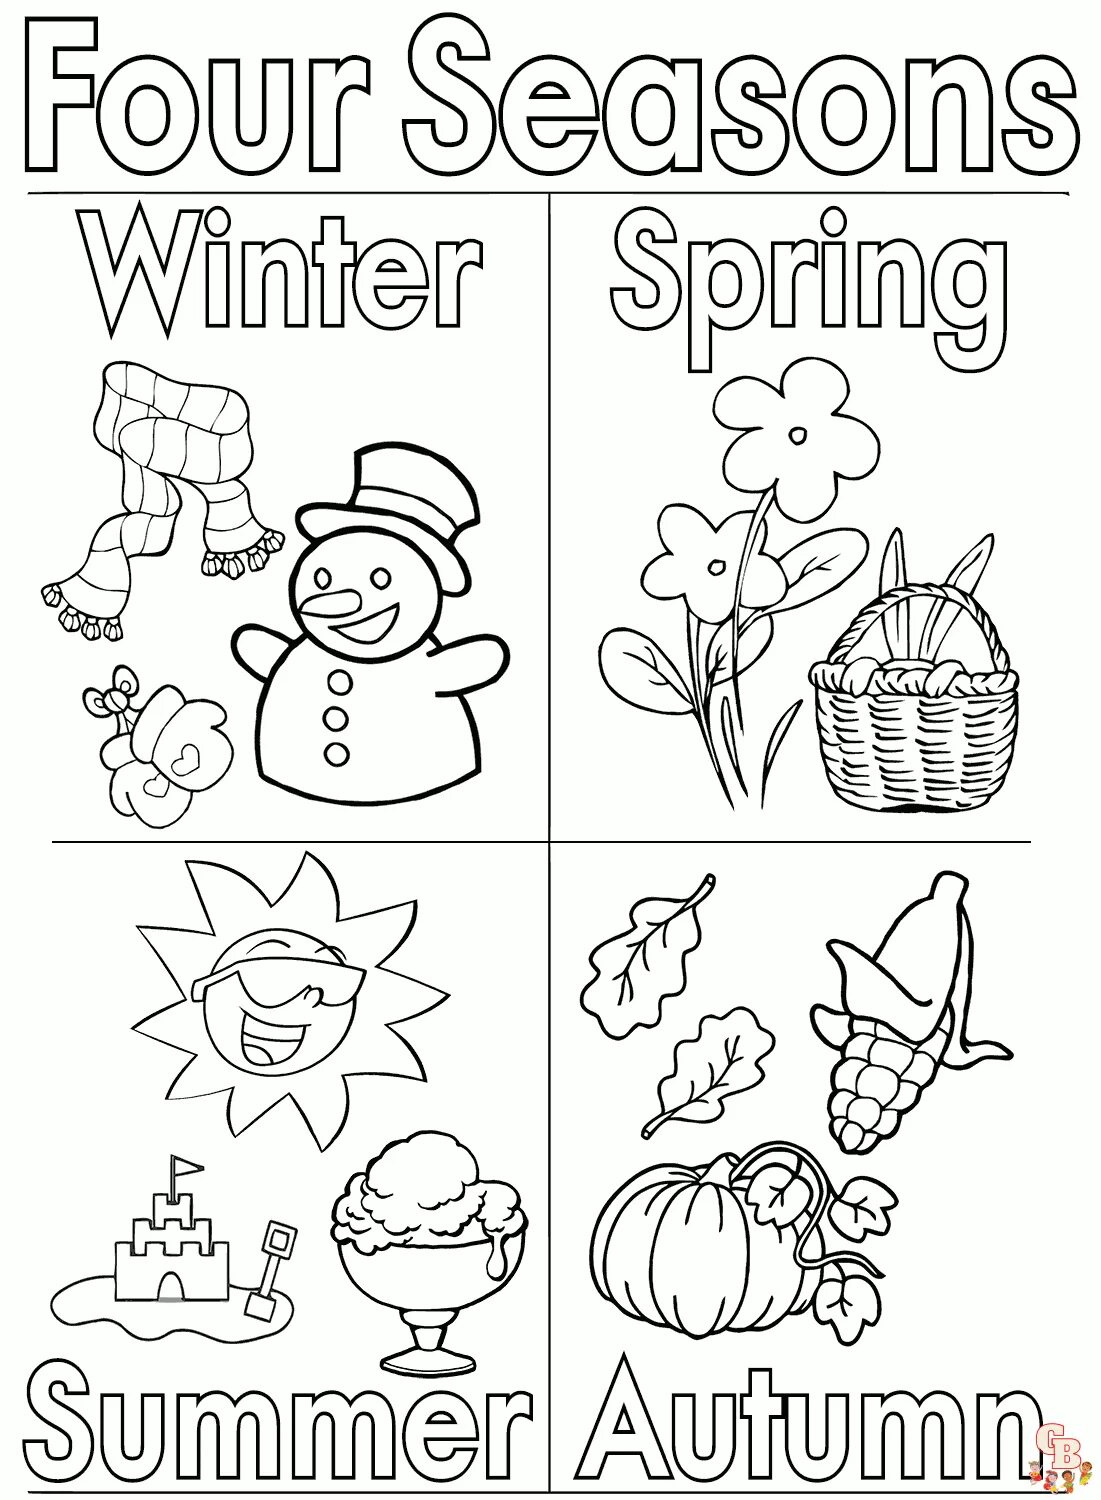 Seasons задания для детей. Времена года на английском раскраска. Seasons раскраска для детей. Английский для малышей времена года.